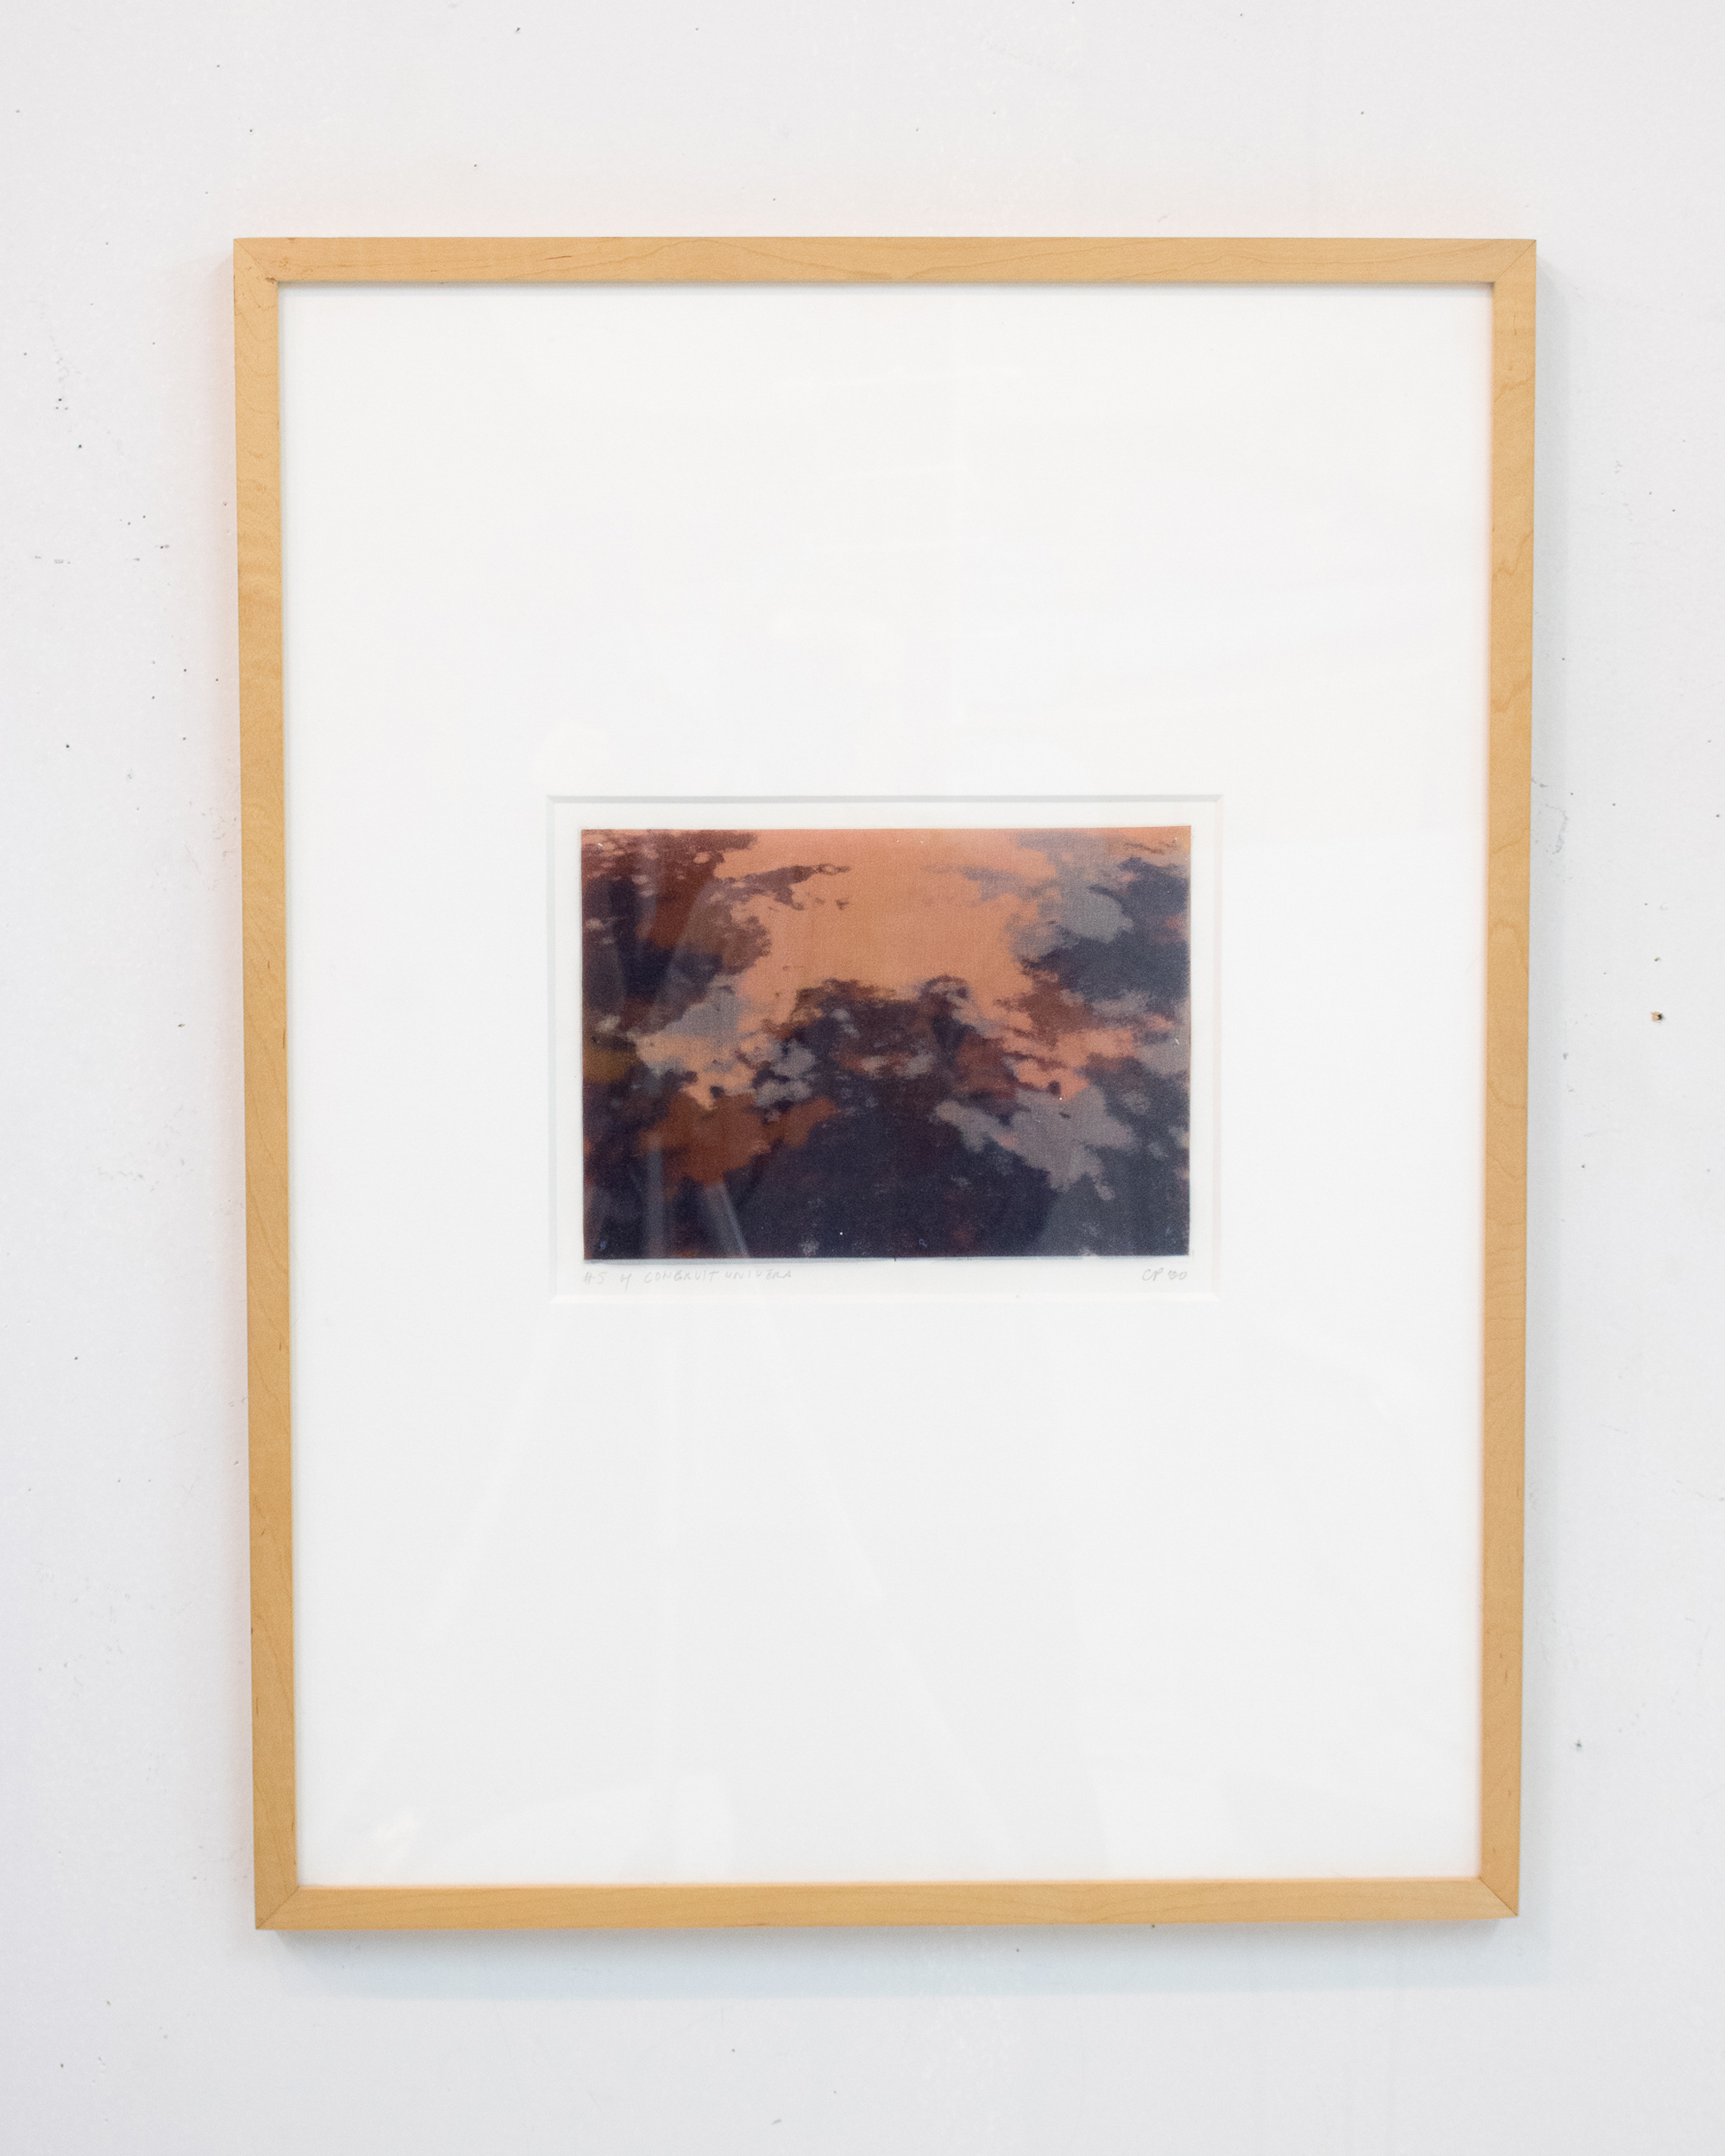  Carol Peligian,  Congruit Universa II , 1999, silk, graphite, plastic, ink, 24 3/4 x 18 3/4 inches 